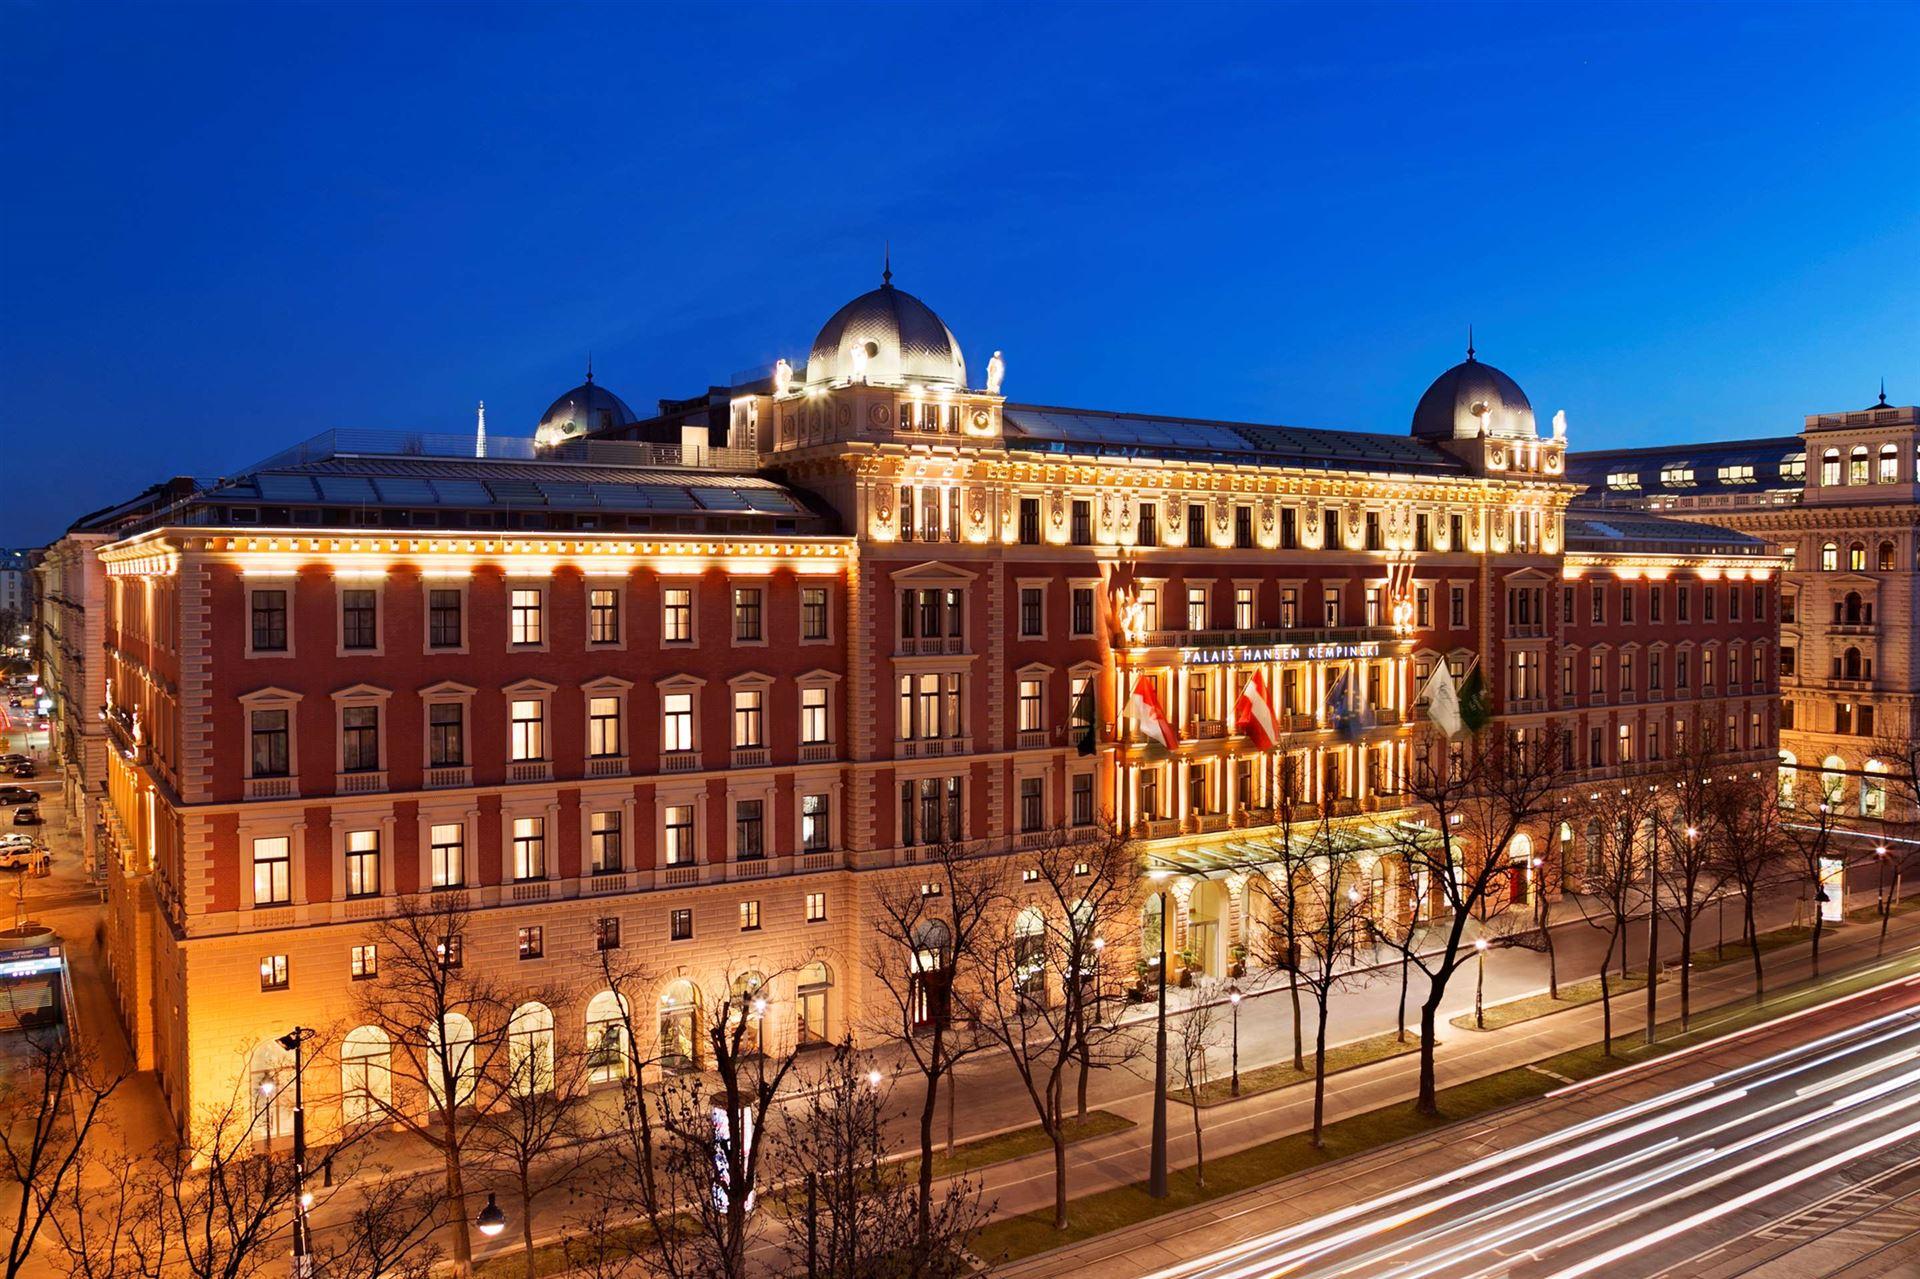 Palais Hansen Kempinski Vienna luxe hotel deals